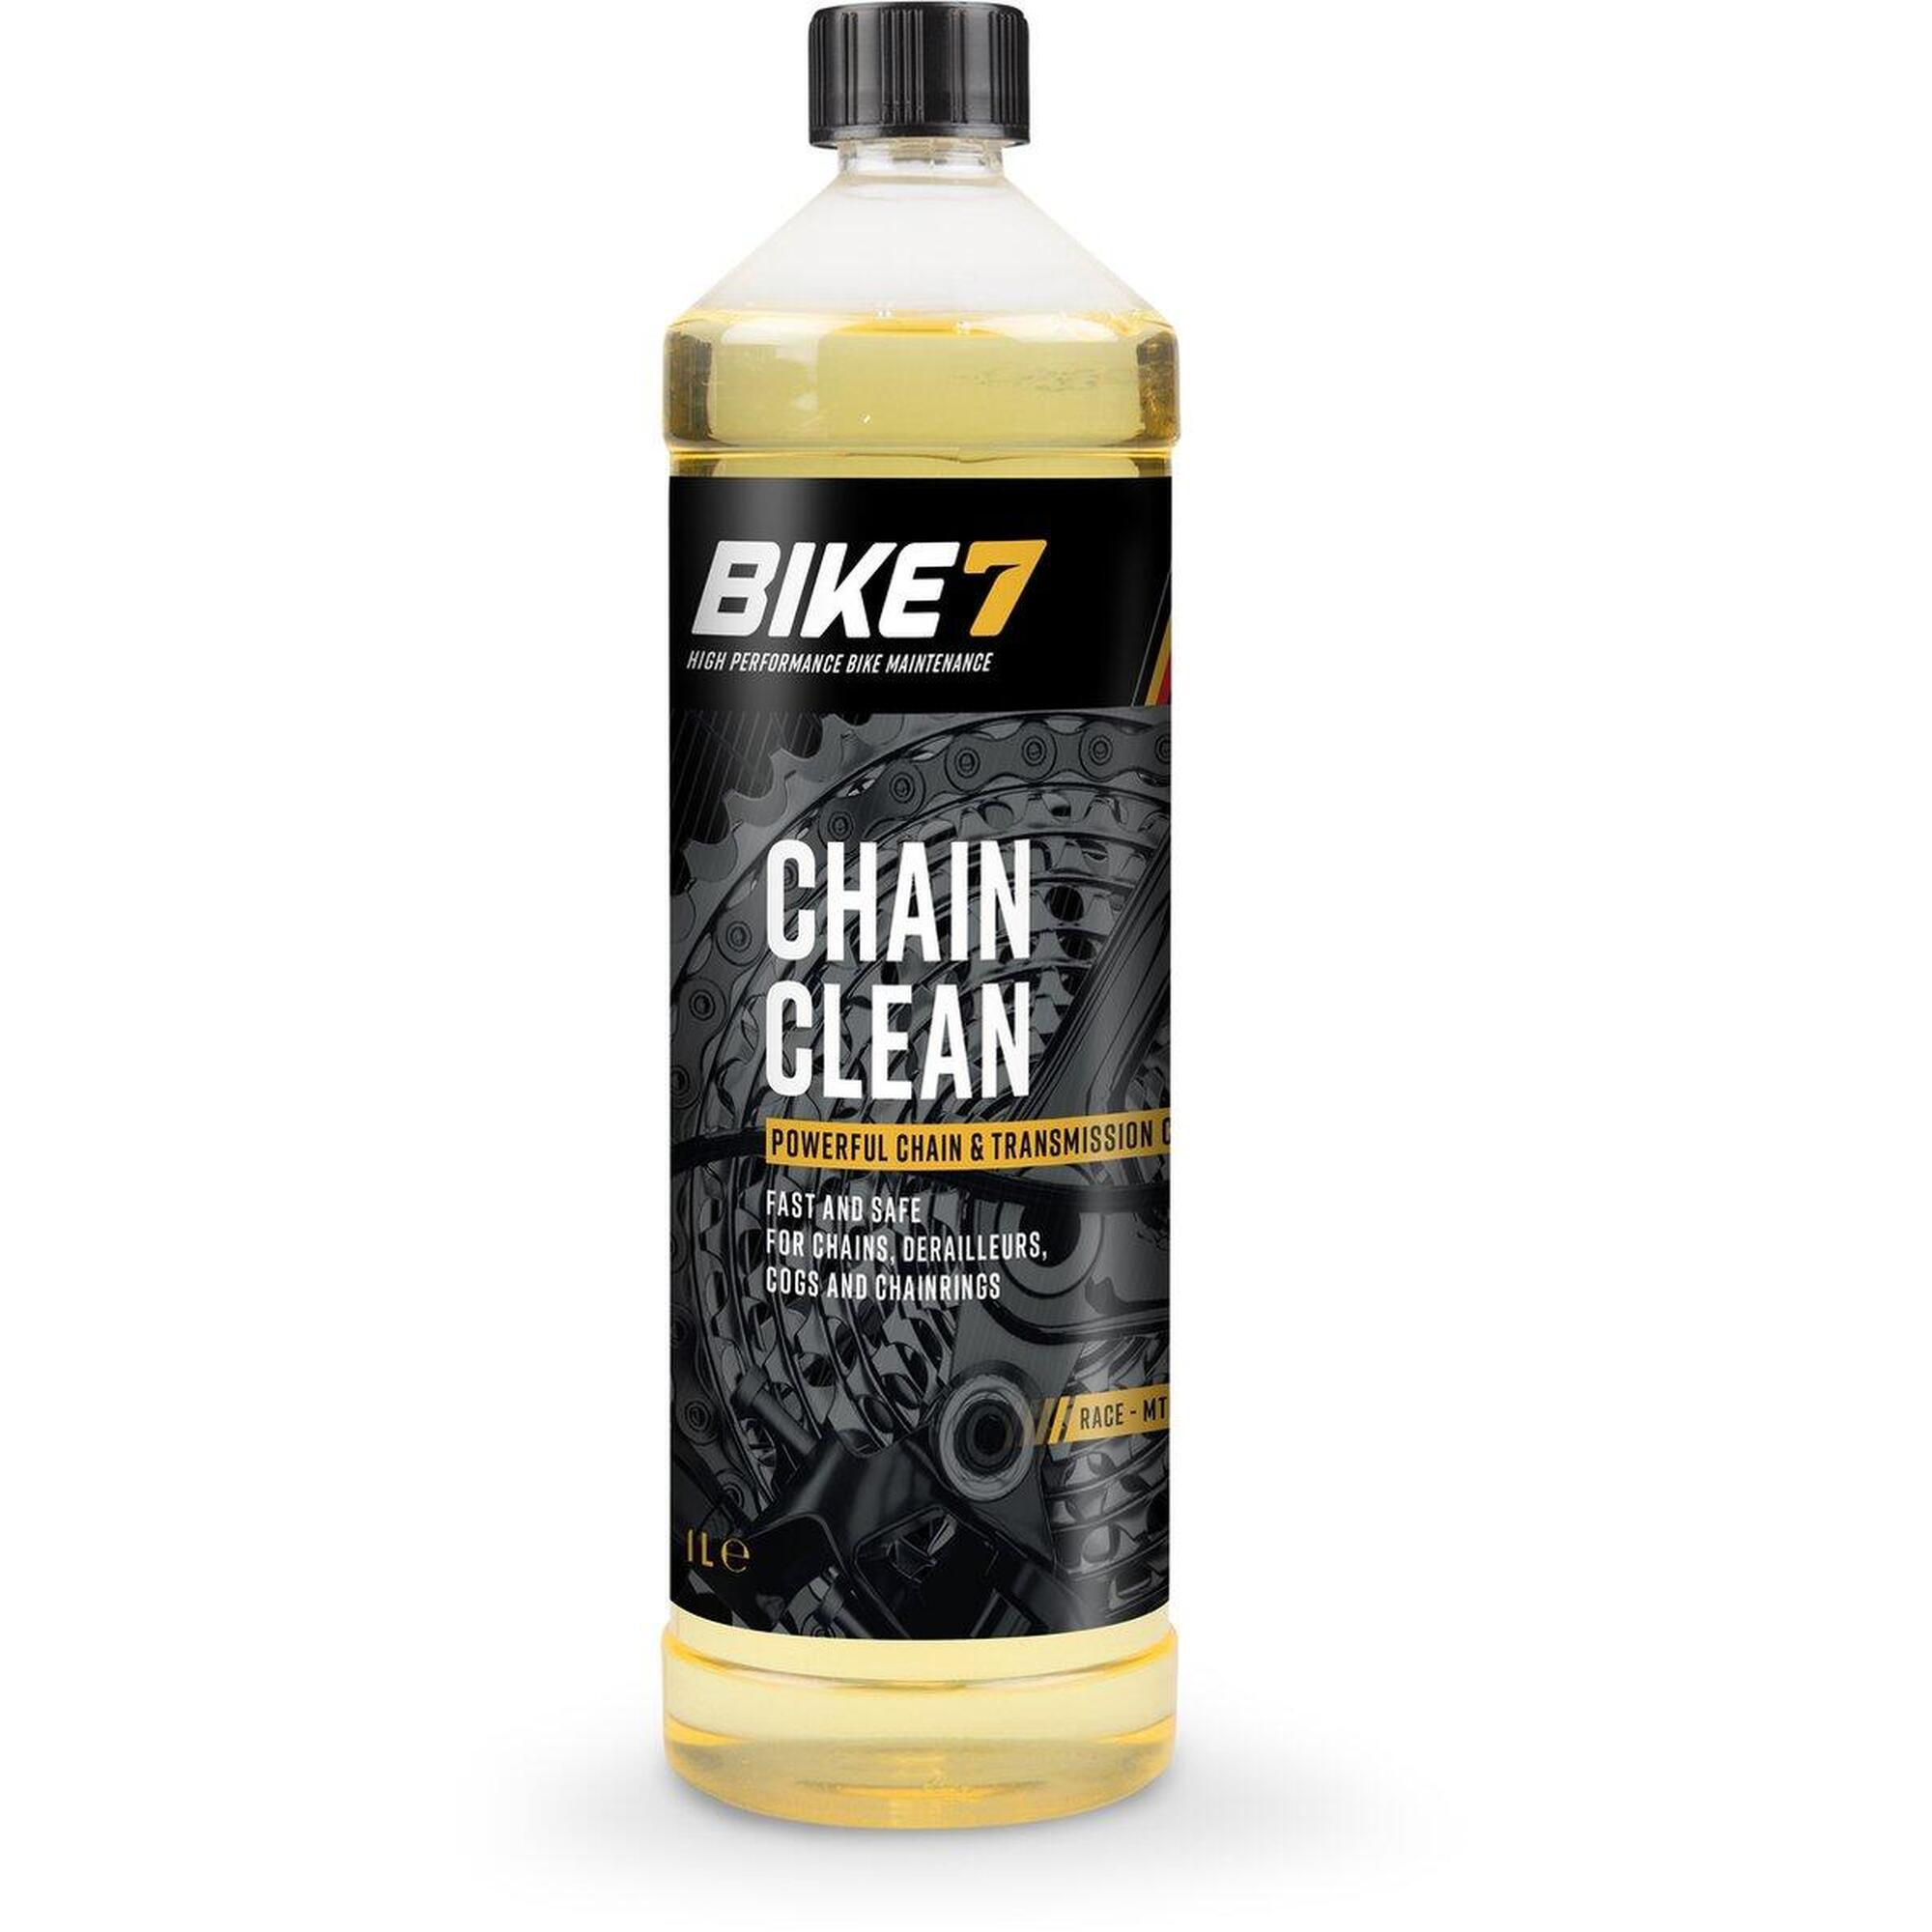 Fahrradzubehör Starker Ketten- und Getriebereiniger - Bike7 Chain Clean 1L